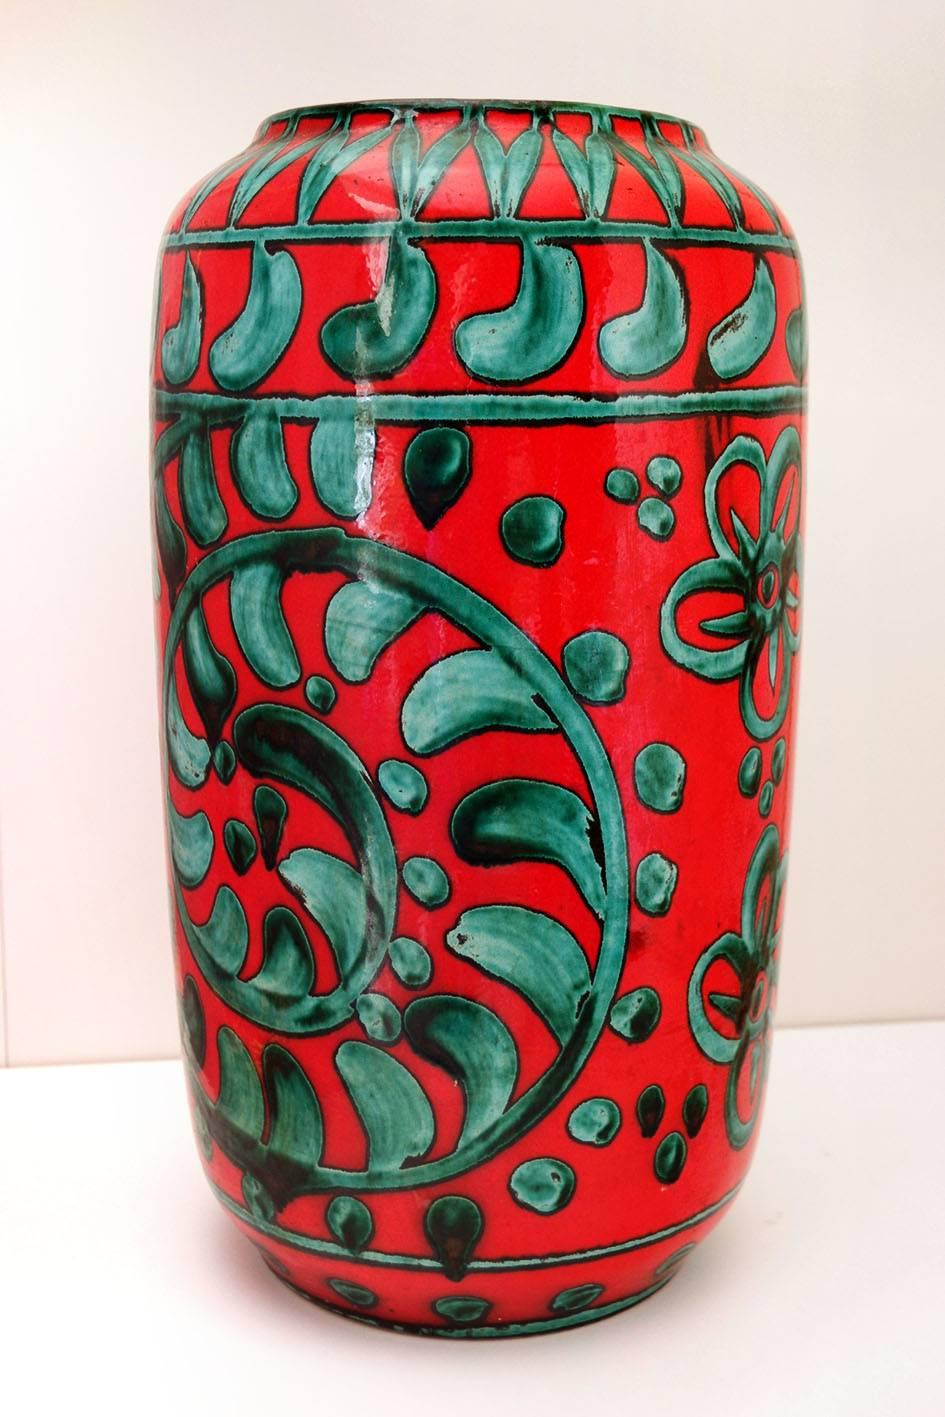 Schöne große Mid-Century-Vase von Scheurich. 
Westdeutschland, 1960er-1970er Jahre
Formnummer 546-40 (Modell-Höhe in Zentimetern).